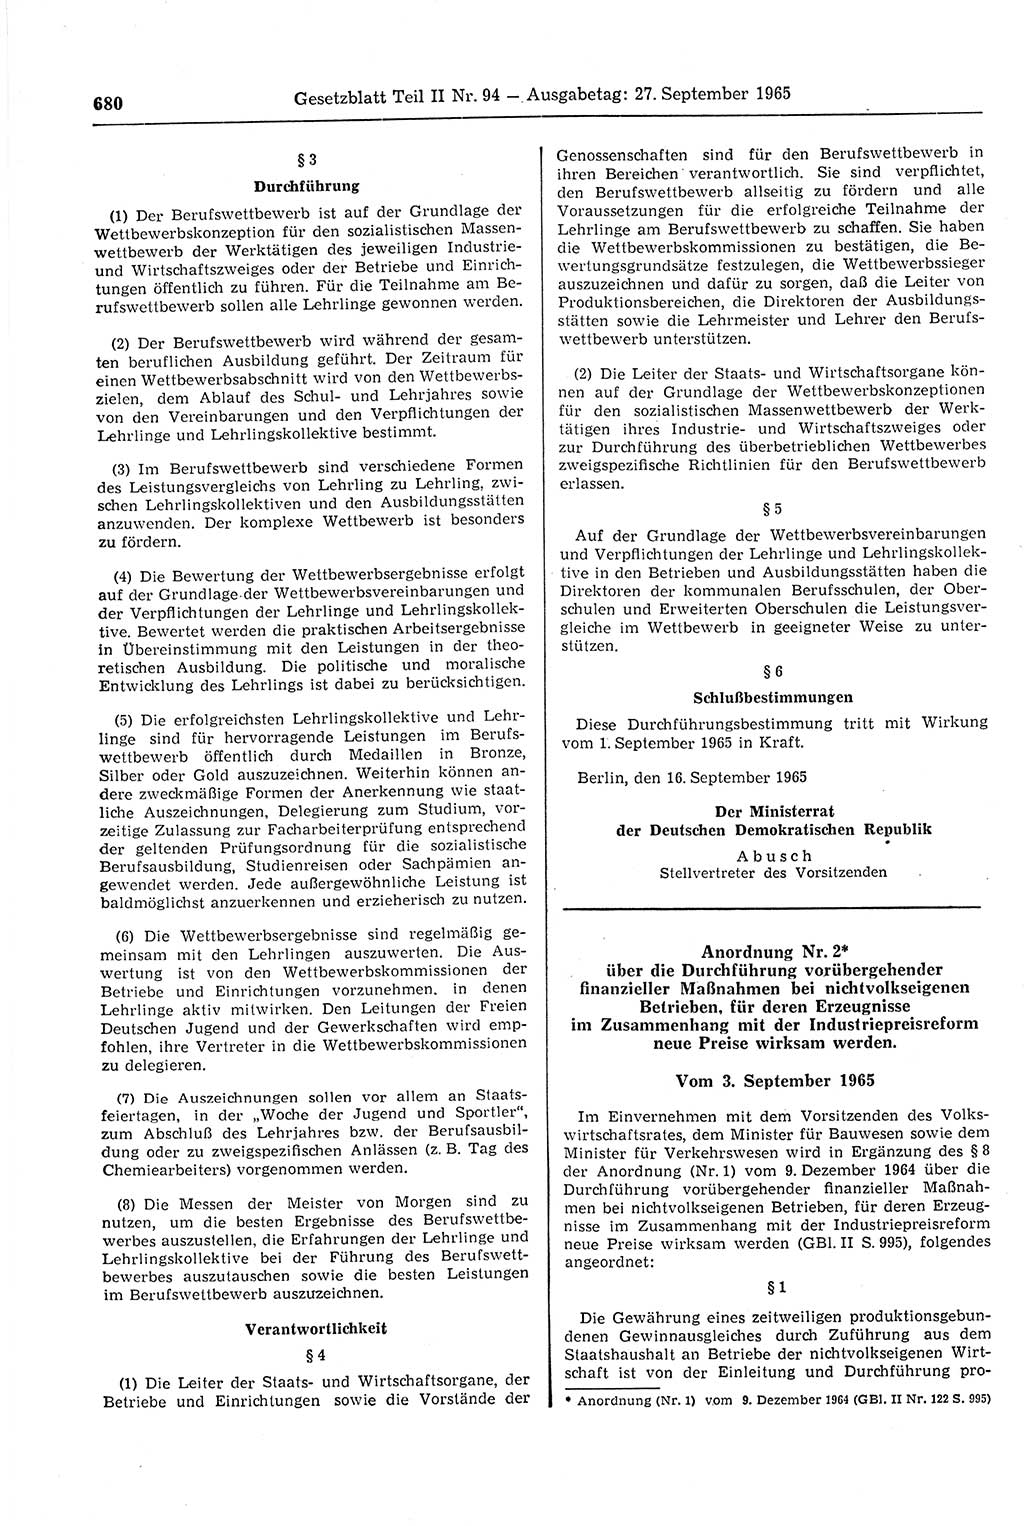 Gesetzblatt (GBl.) der Deutschen Demokratischen Republik (DDR) Teil ⅠⅠ 1965, Seite 680 (GBl. DDR ⅠⅠ 1965, S. 680)